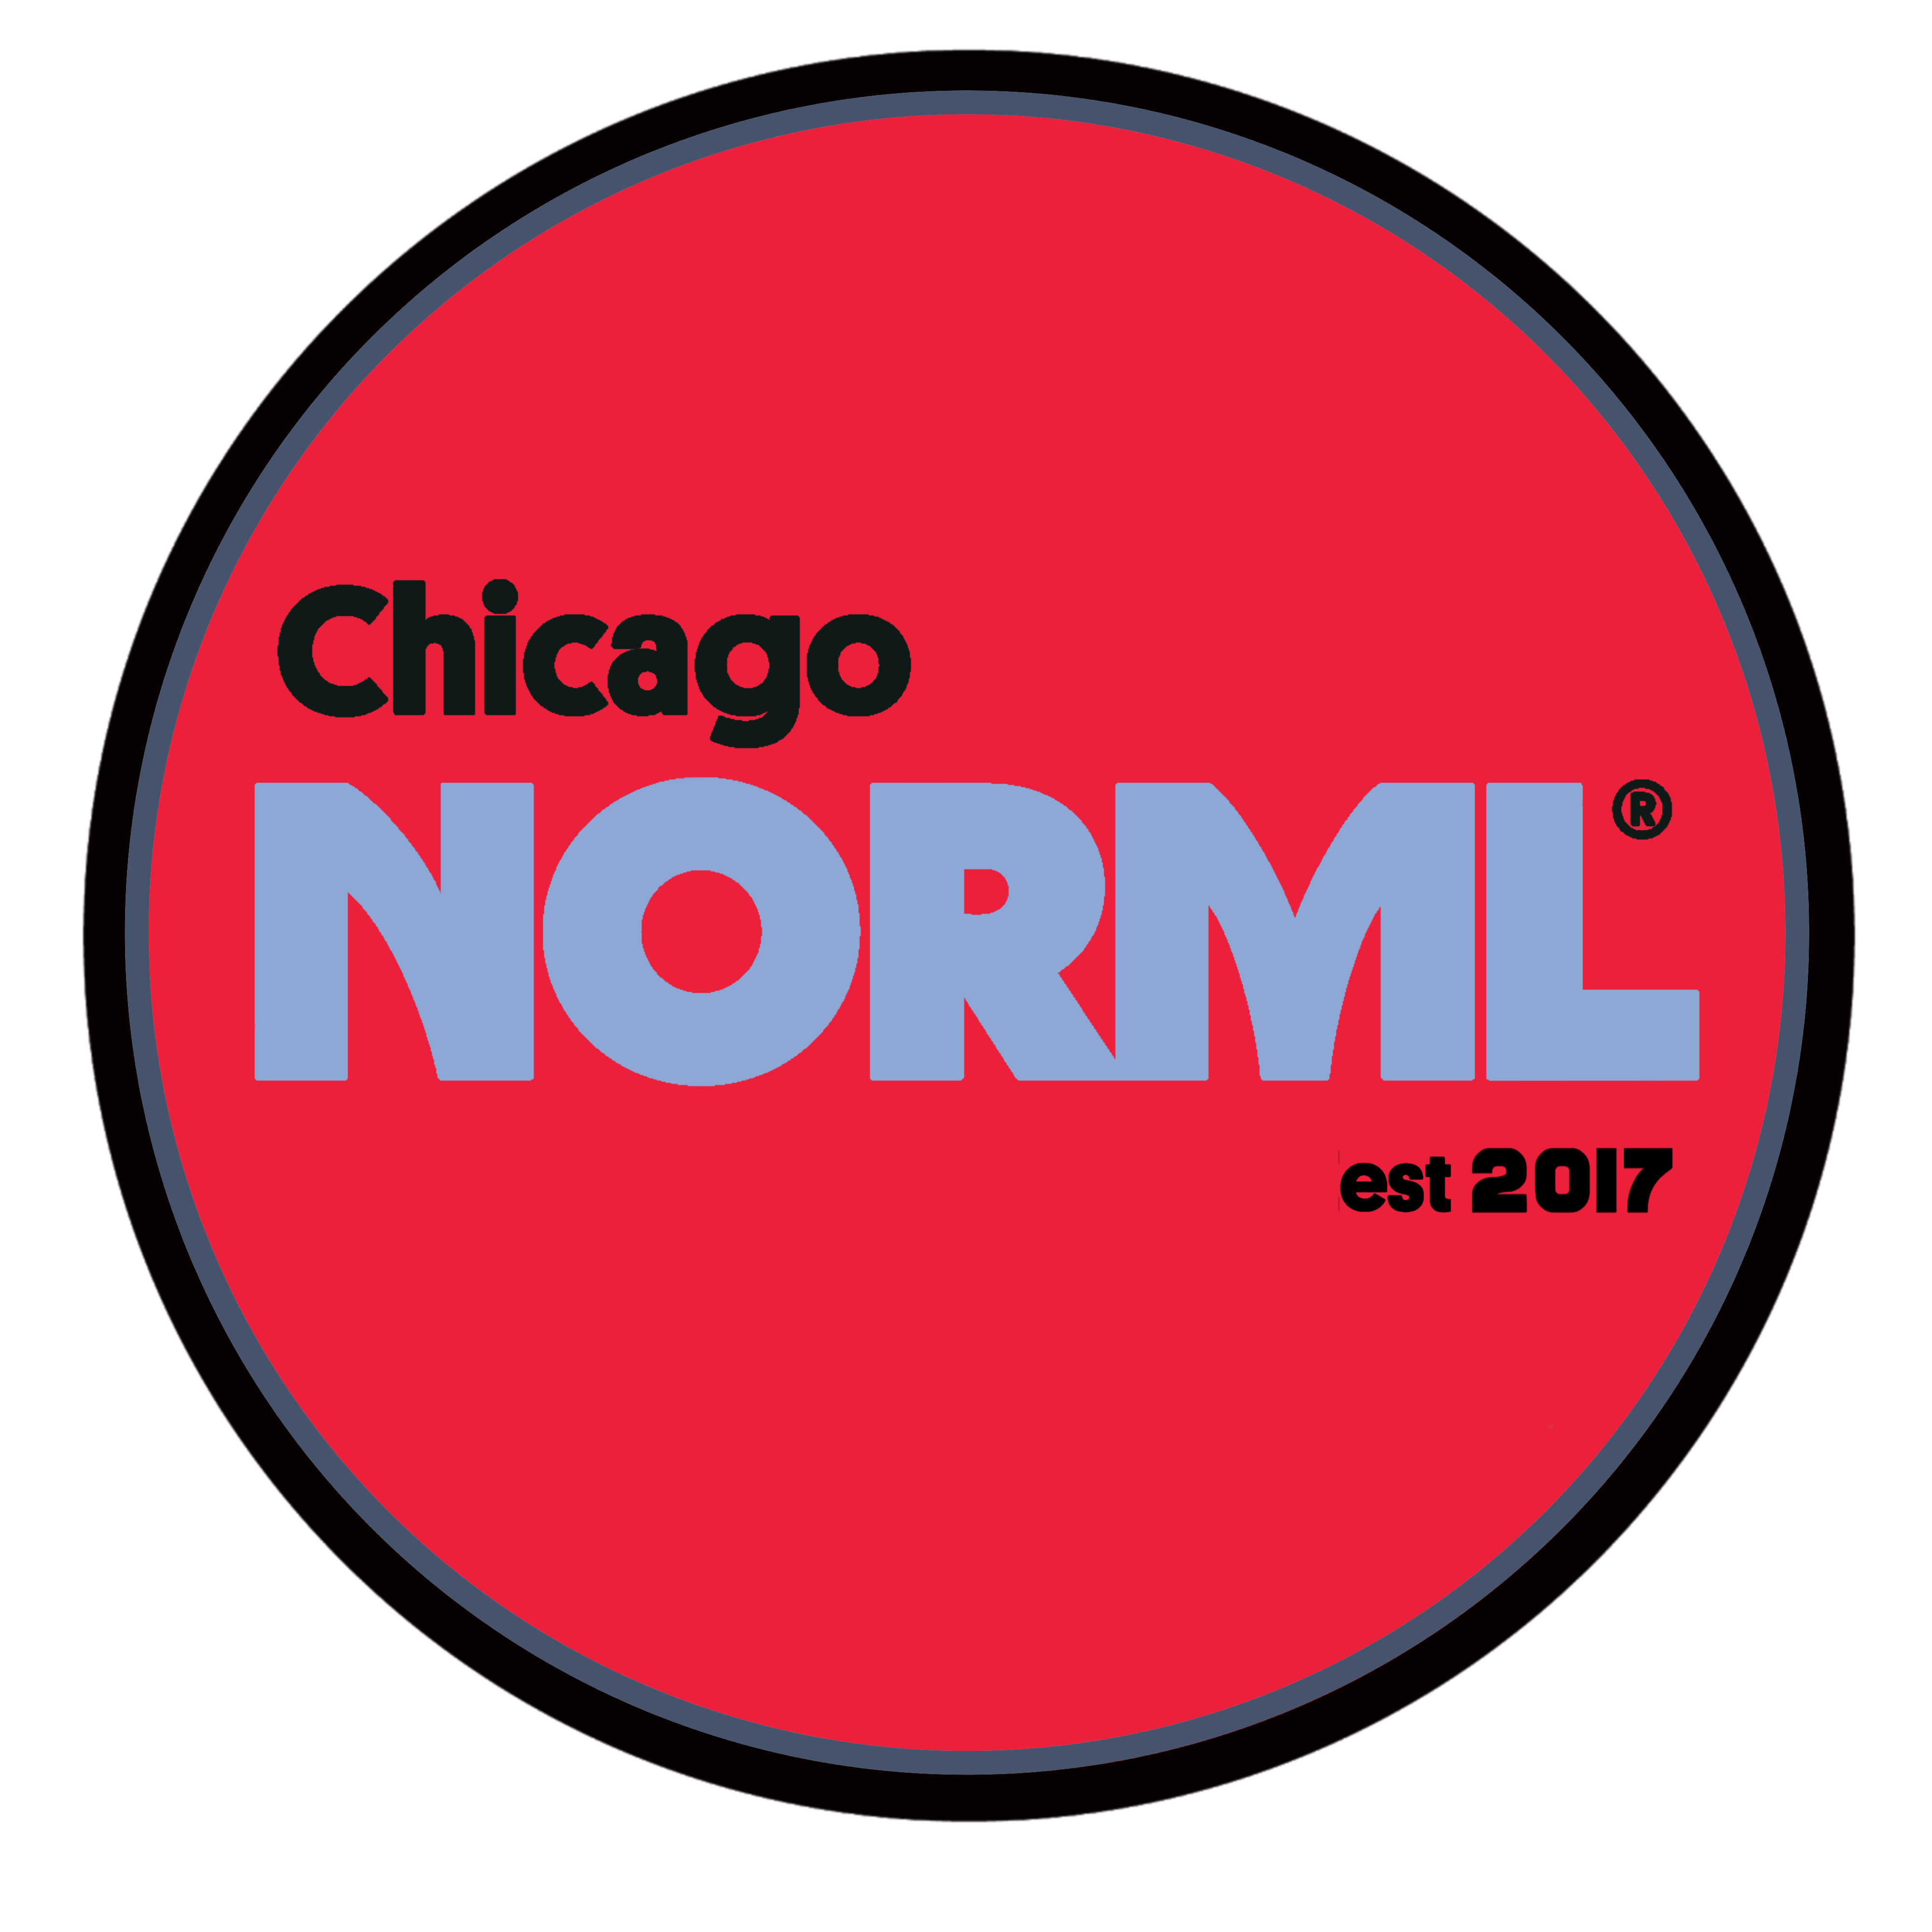 Chicago NORML logo